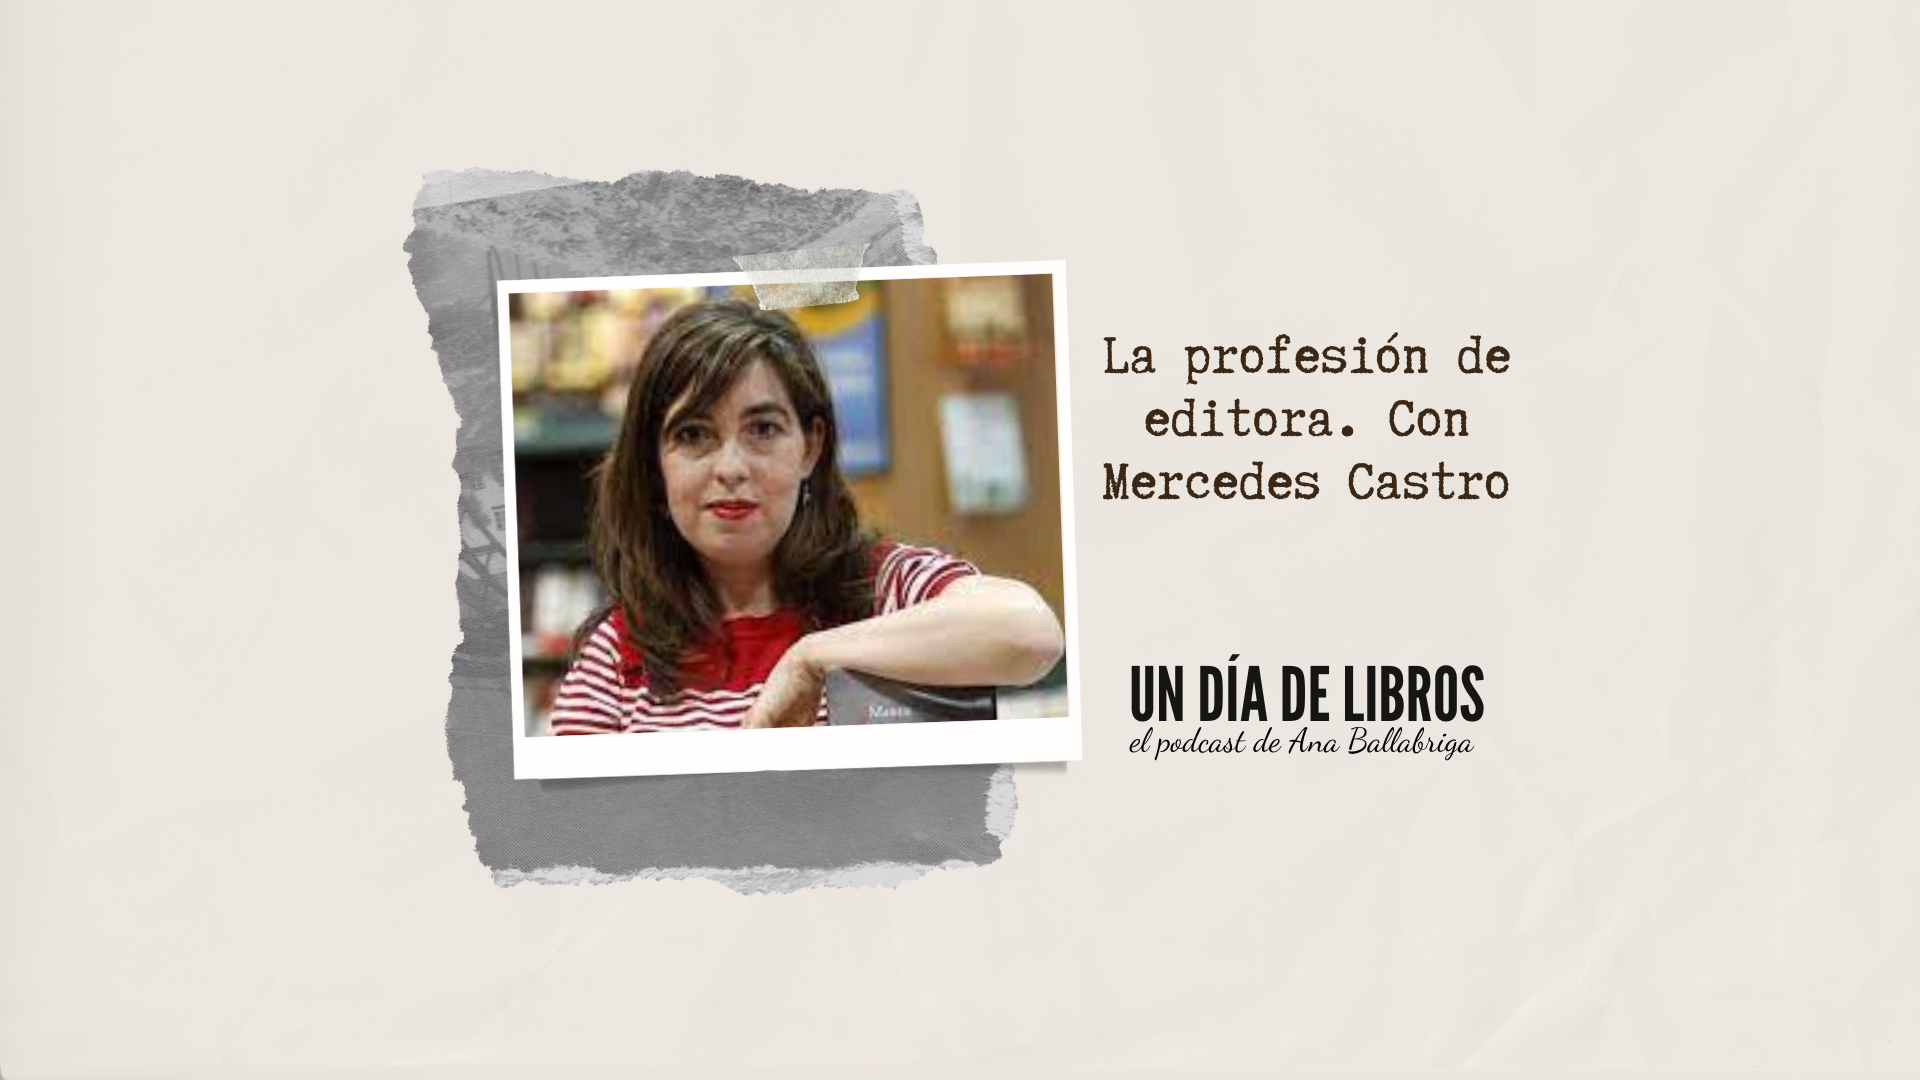 La profesión de editora, con Mercedes Castro